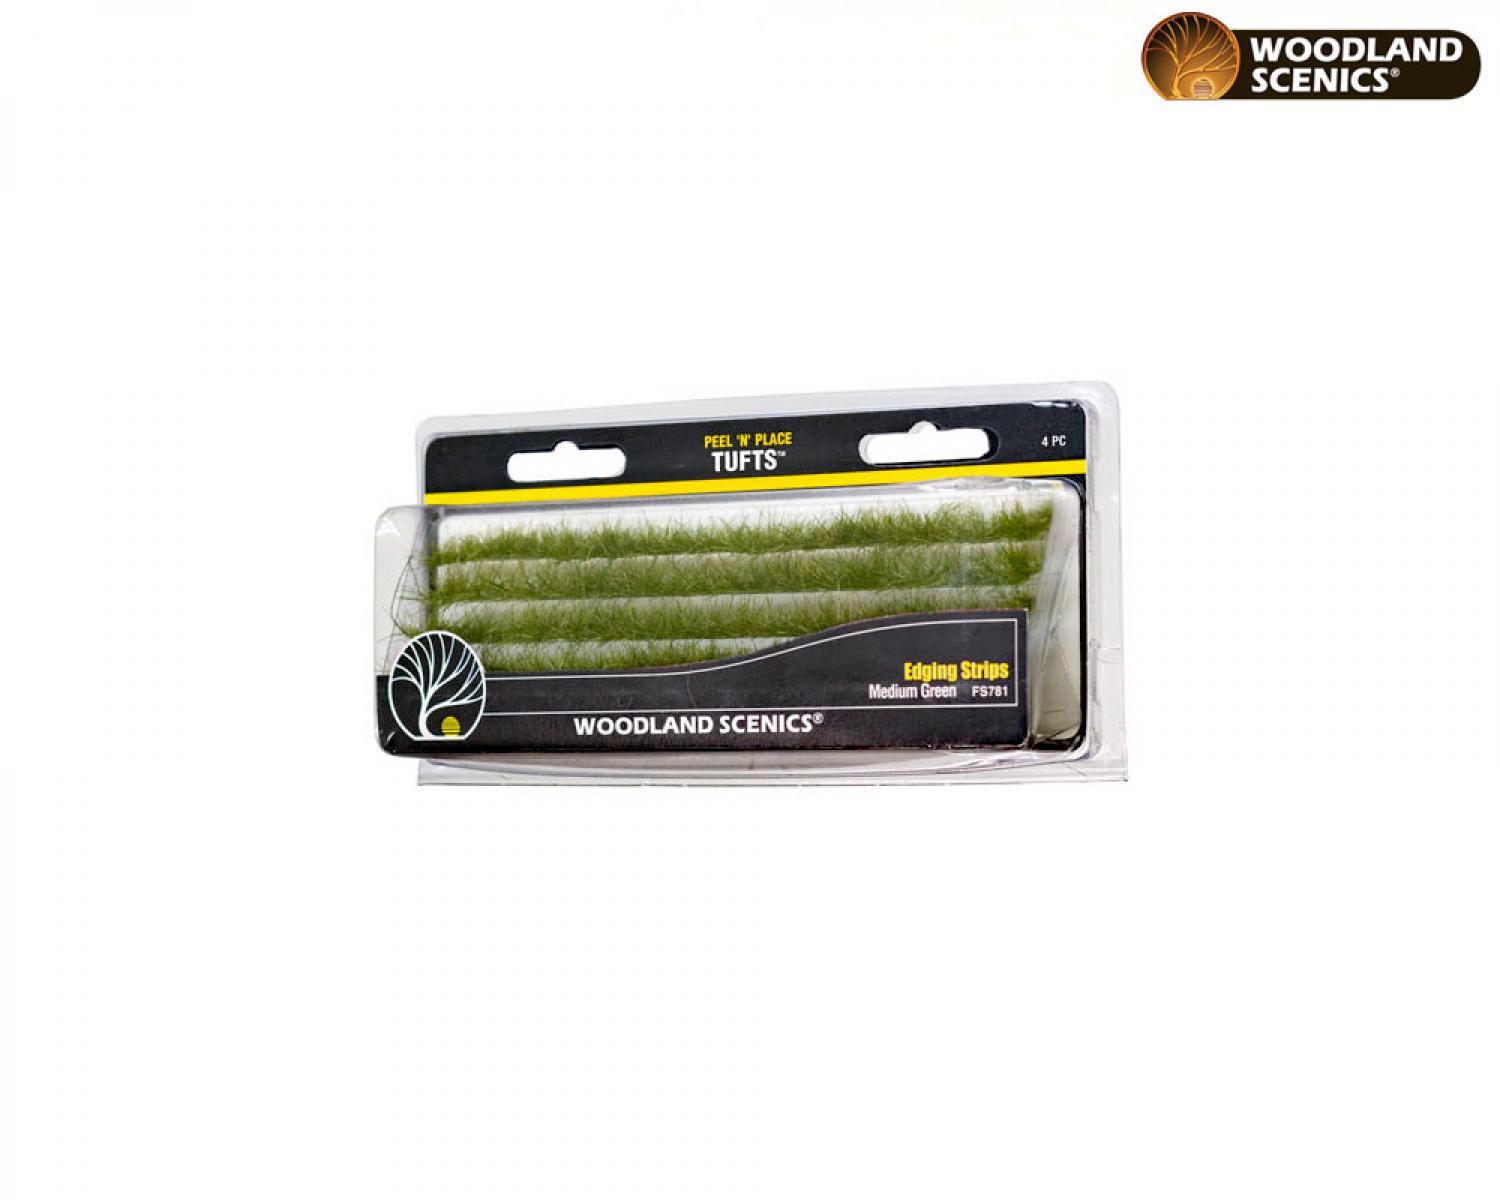 Woodland WFS781 Dark Green Edging Strips